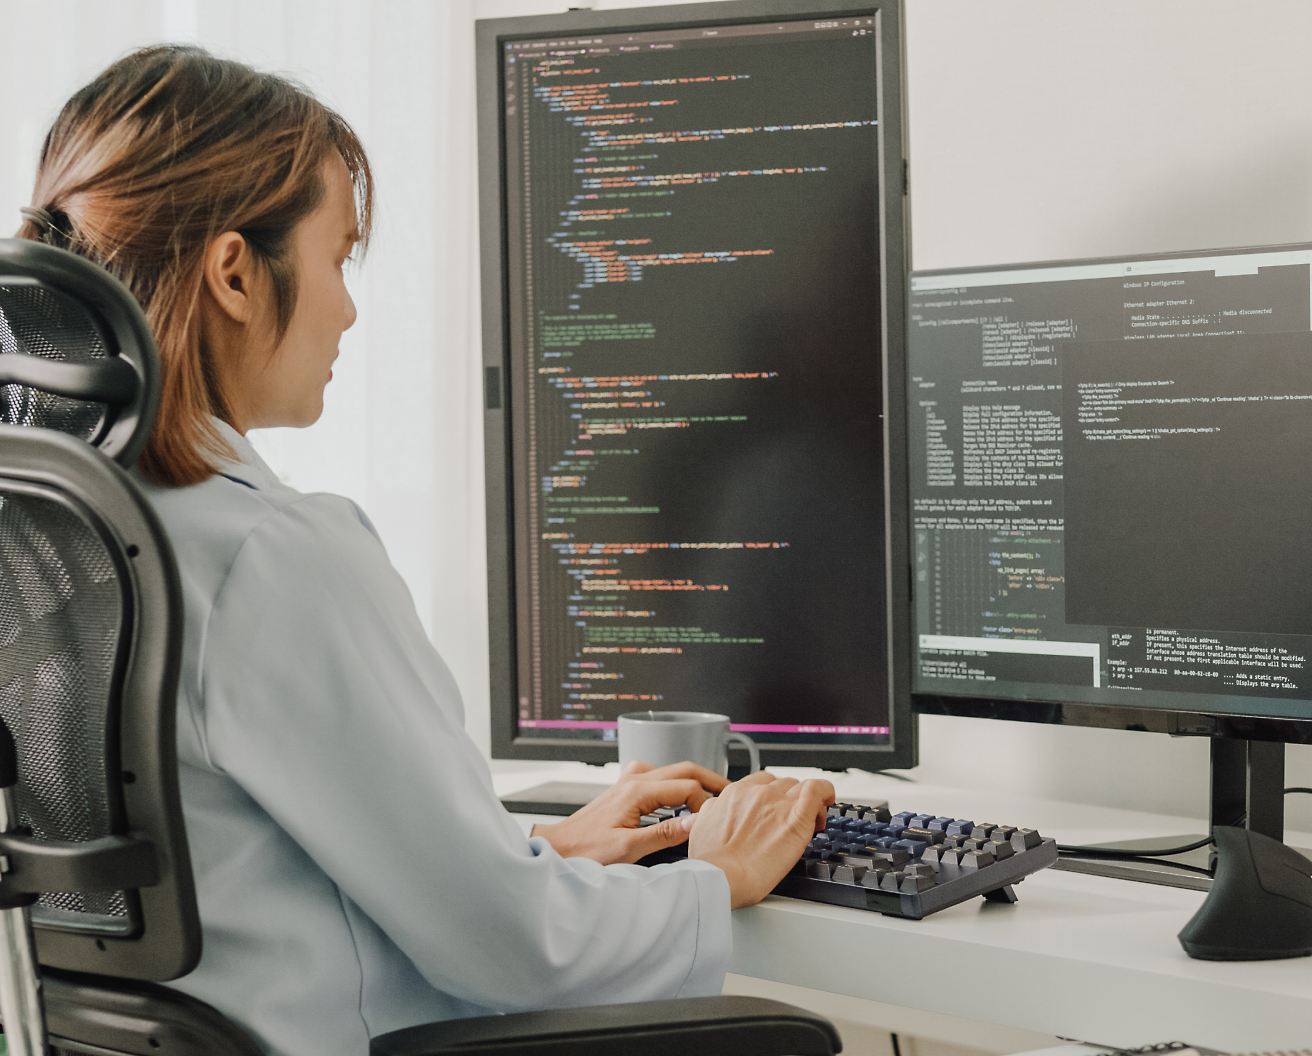 Bir ofis sandalyesinde oturmuş, programlama kodu gösteren birden fazla ekranla bilgisayarda kod yazan bir kadın.